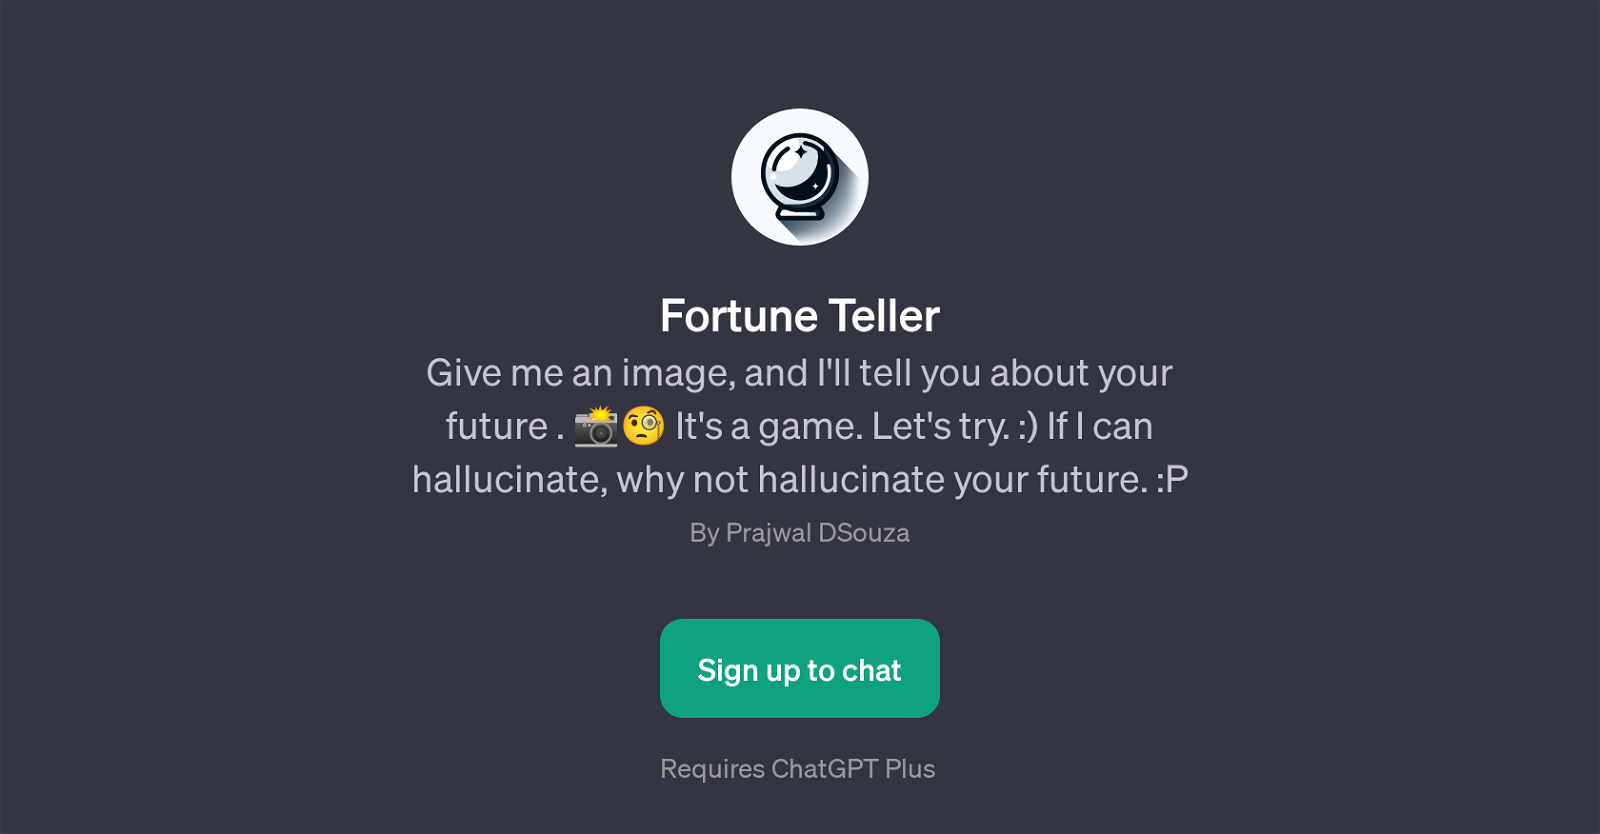 Fortune Teller website